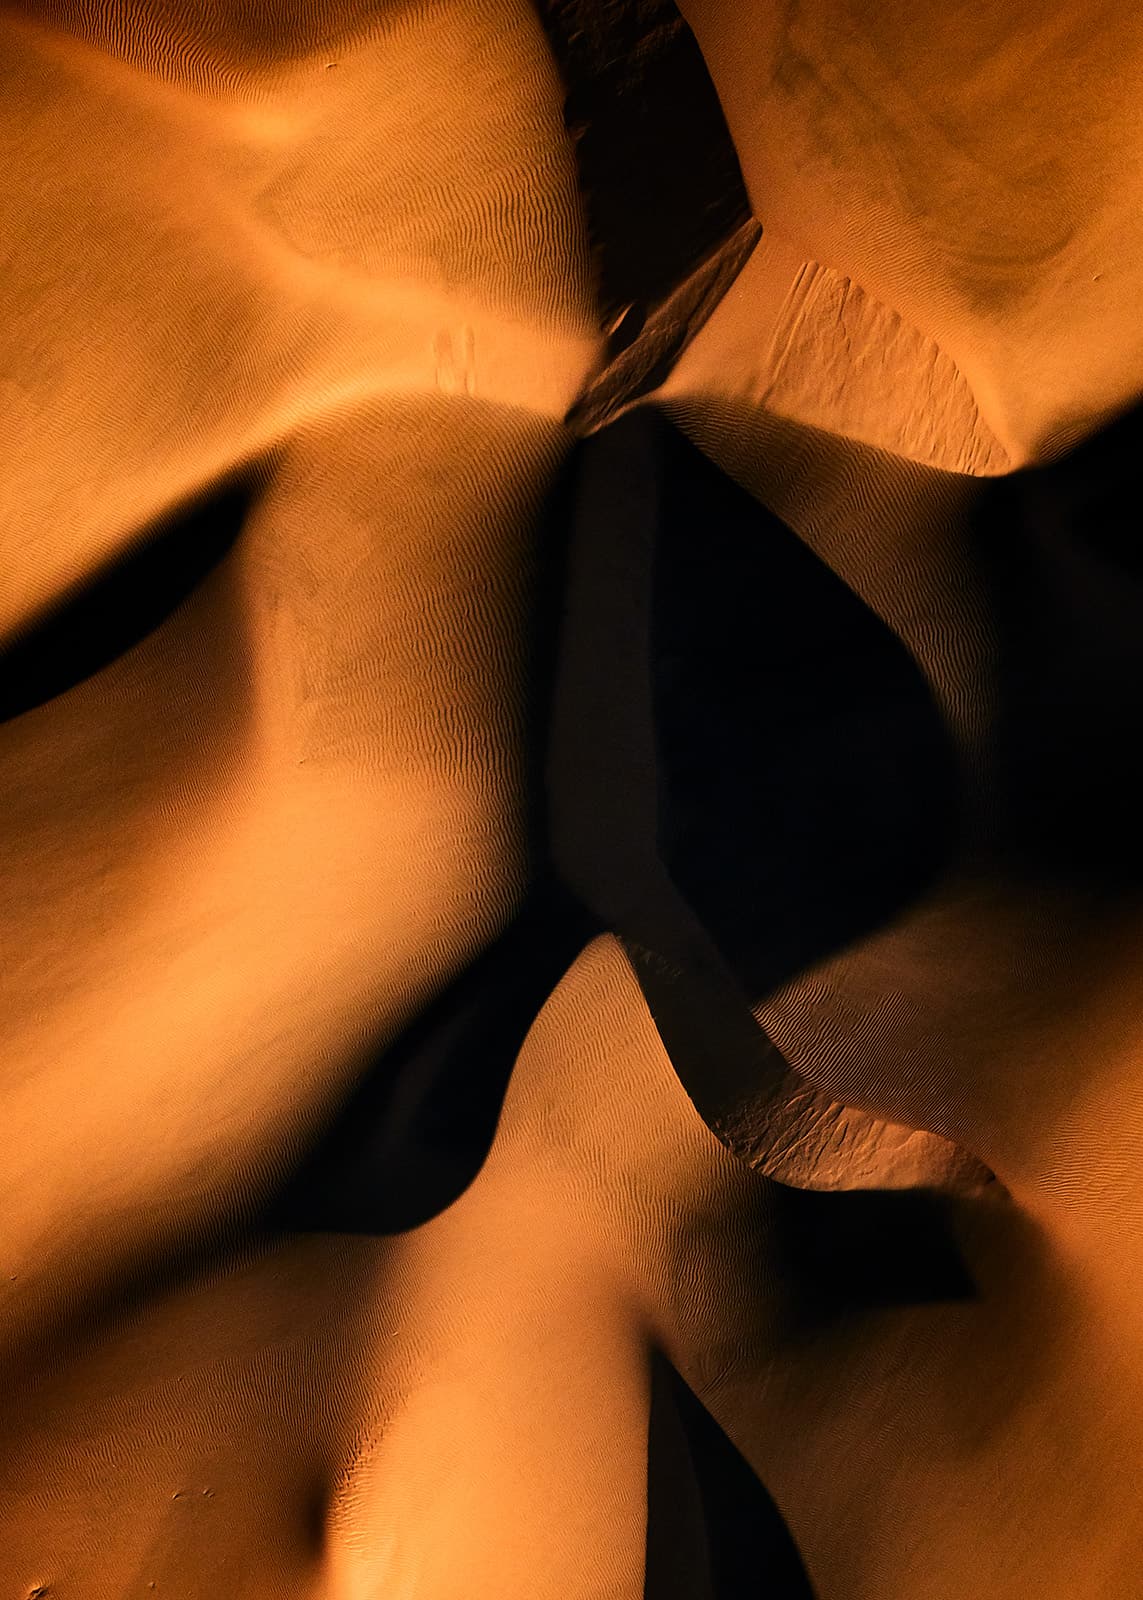 "Under the Surface" Luftbild der Wüste Namibias - Farbspiel in den schönsten Orangtönen